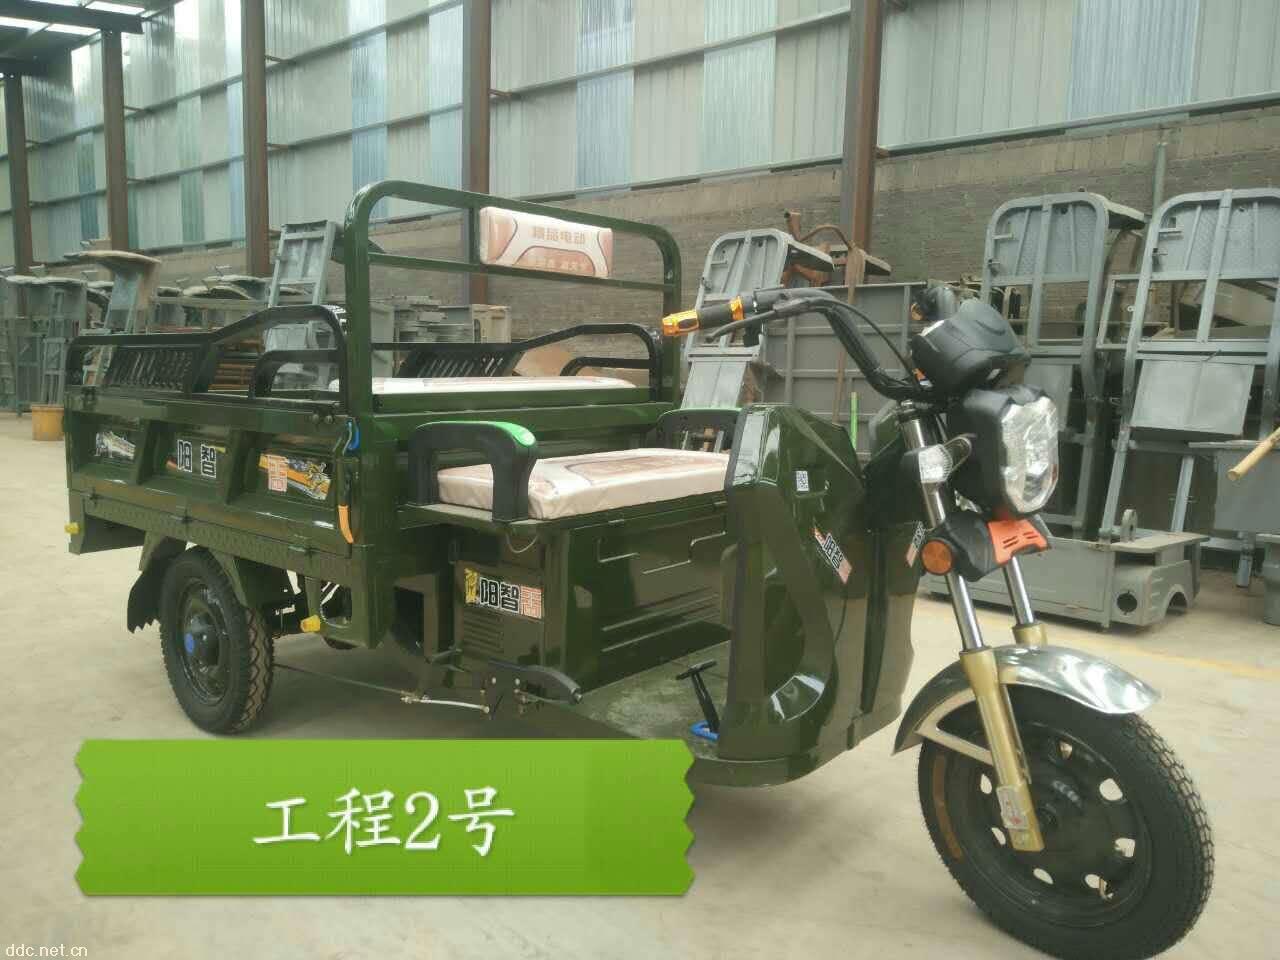 新乡市天科智阳电动三轮车有限公司